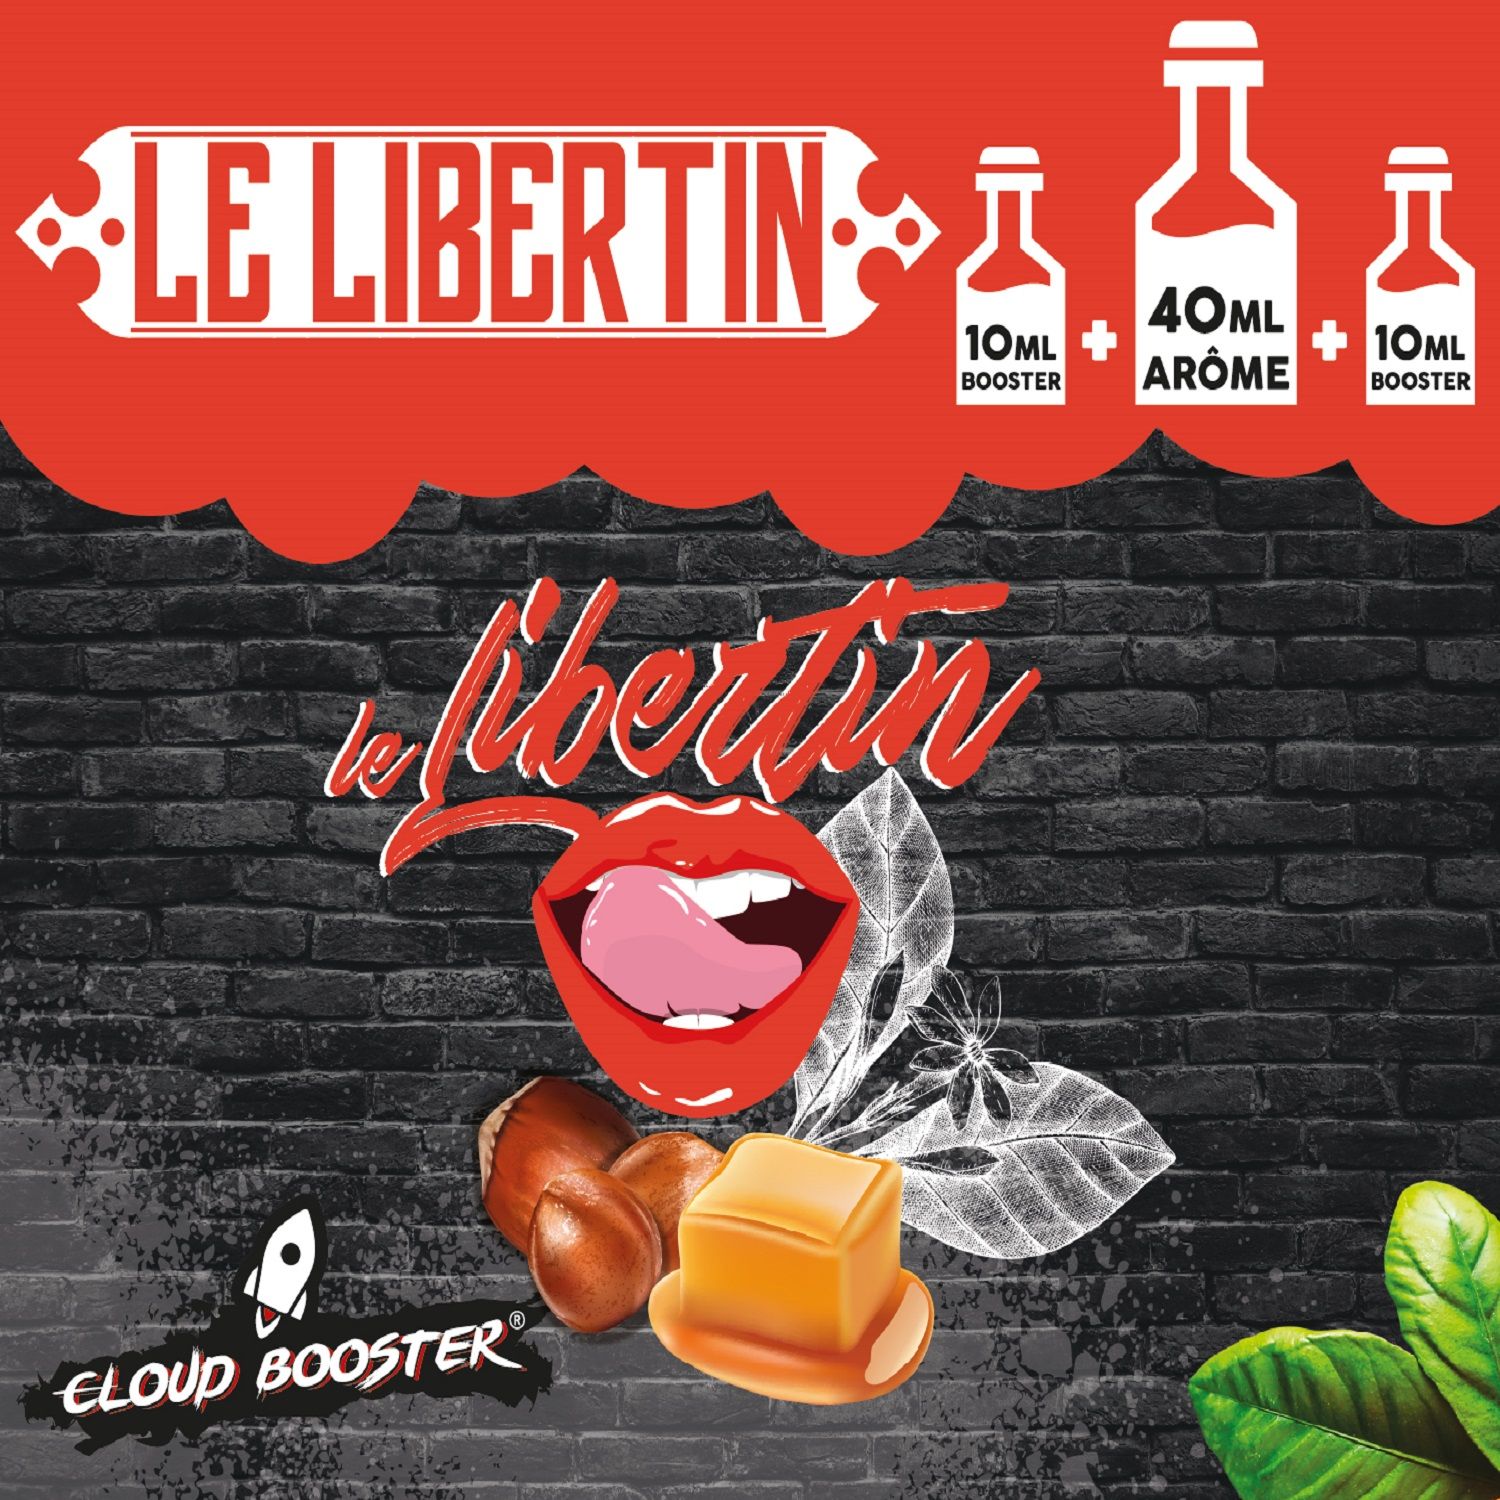 Le Libertin 40ml - Cloud Booster